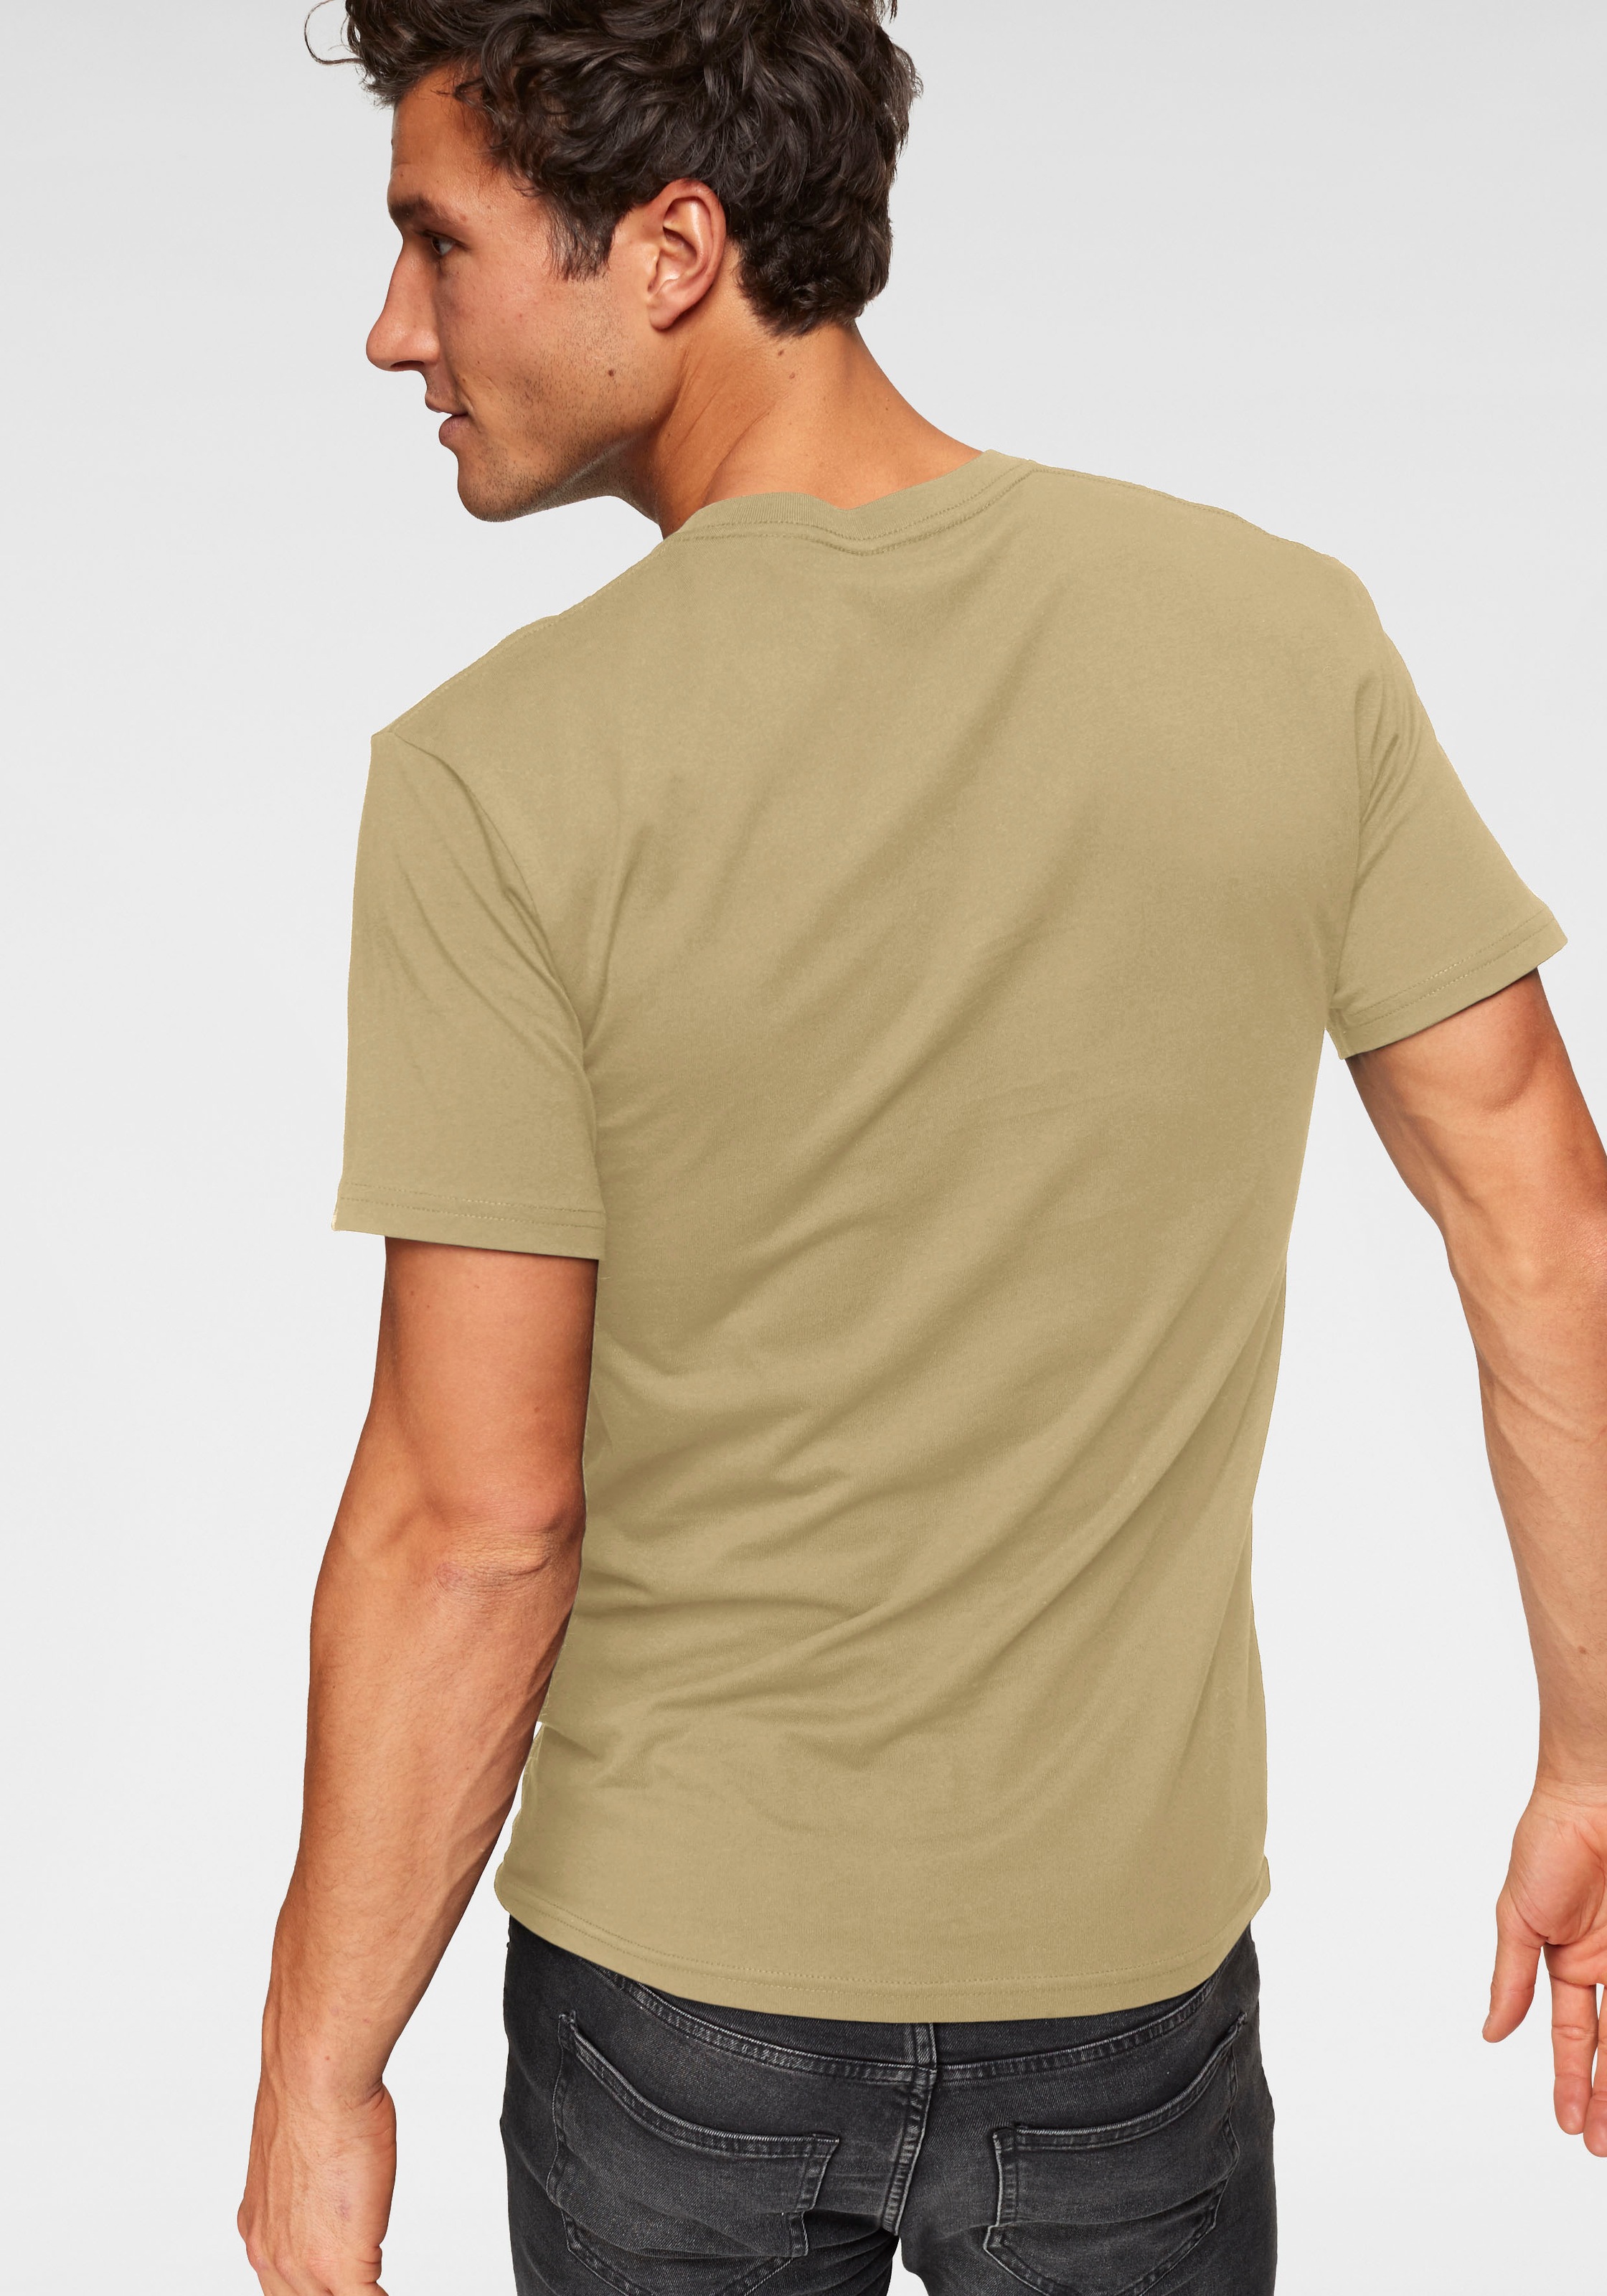 ➤ Shirts versandkostenfrei ohne kaufen - Mindestbestellwert